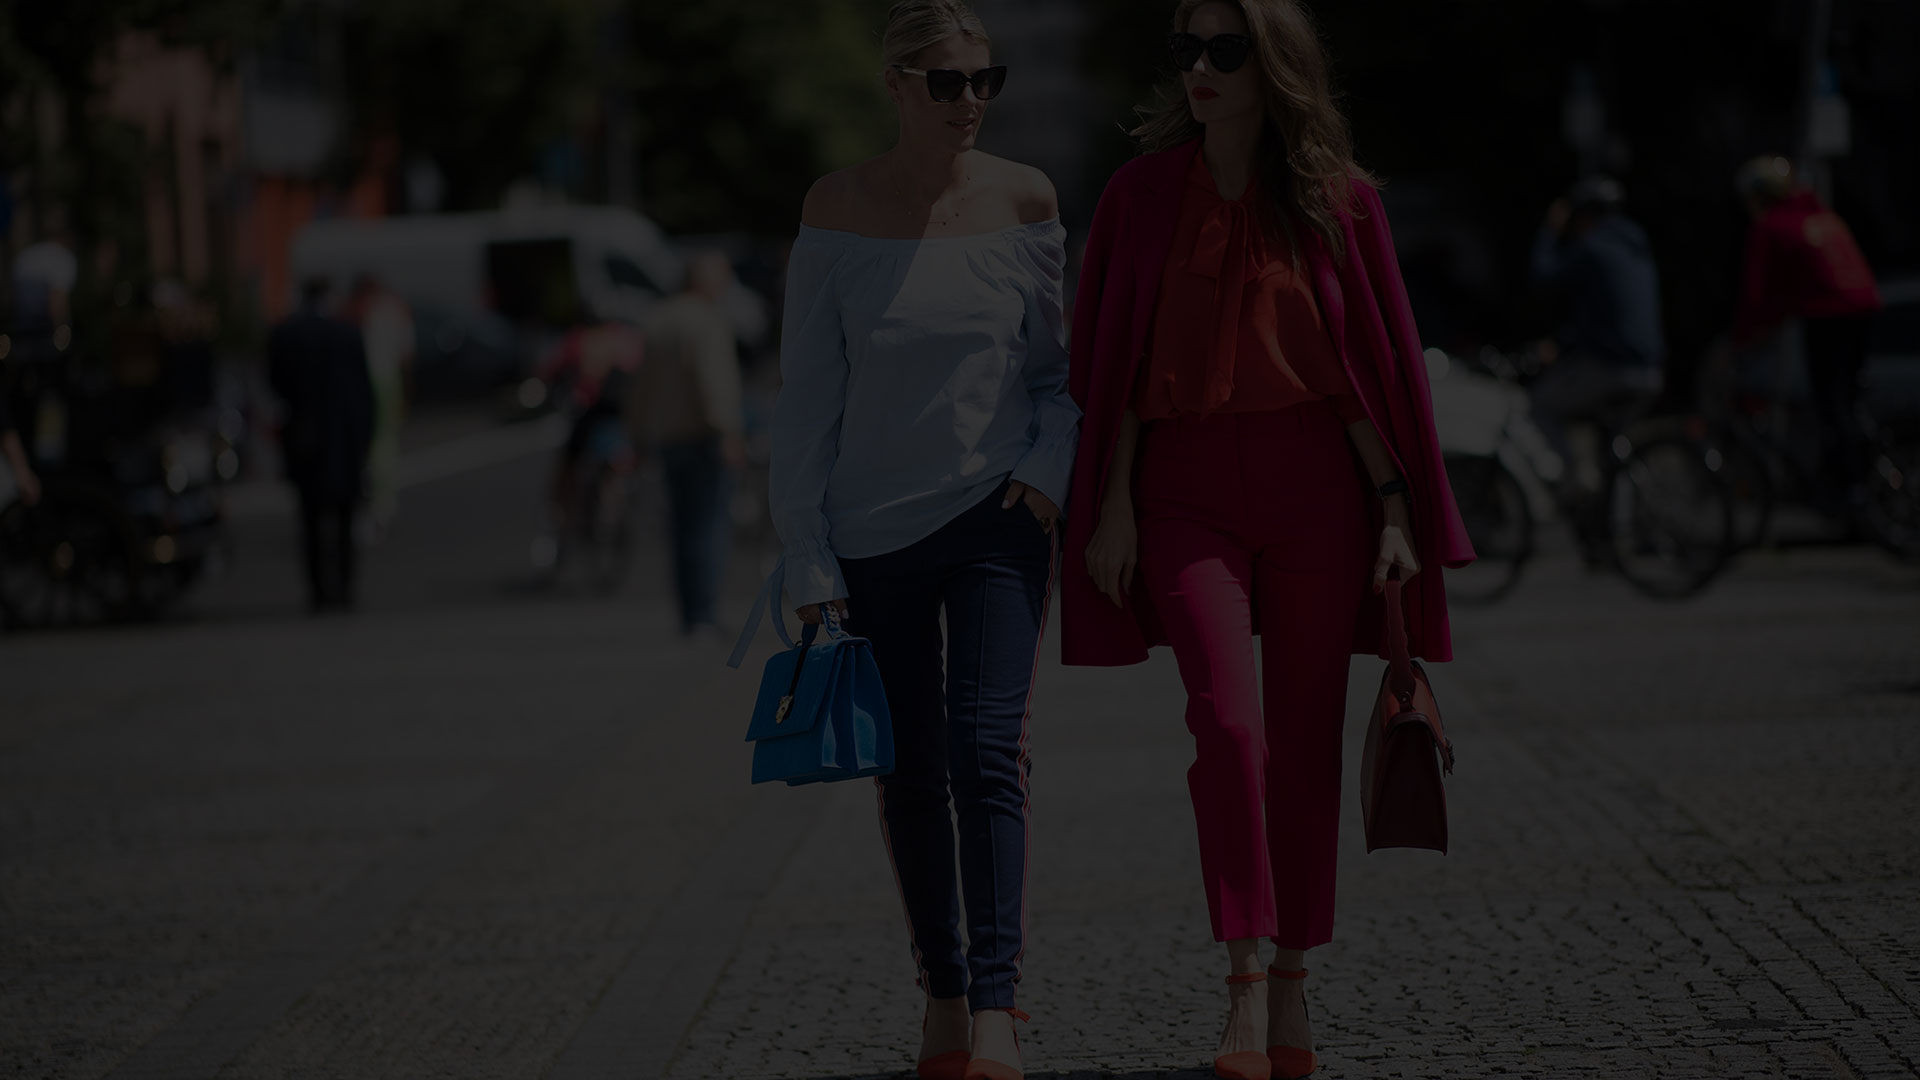 دو خانم در حال راه رفتن در خیابان- آژانس دیجیتال کربن- تبلیغات- تبلیغات دیجیتال